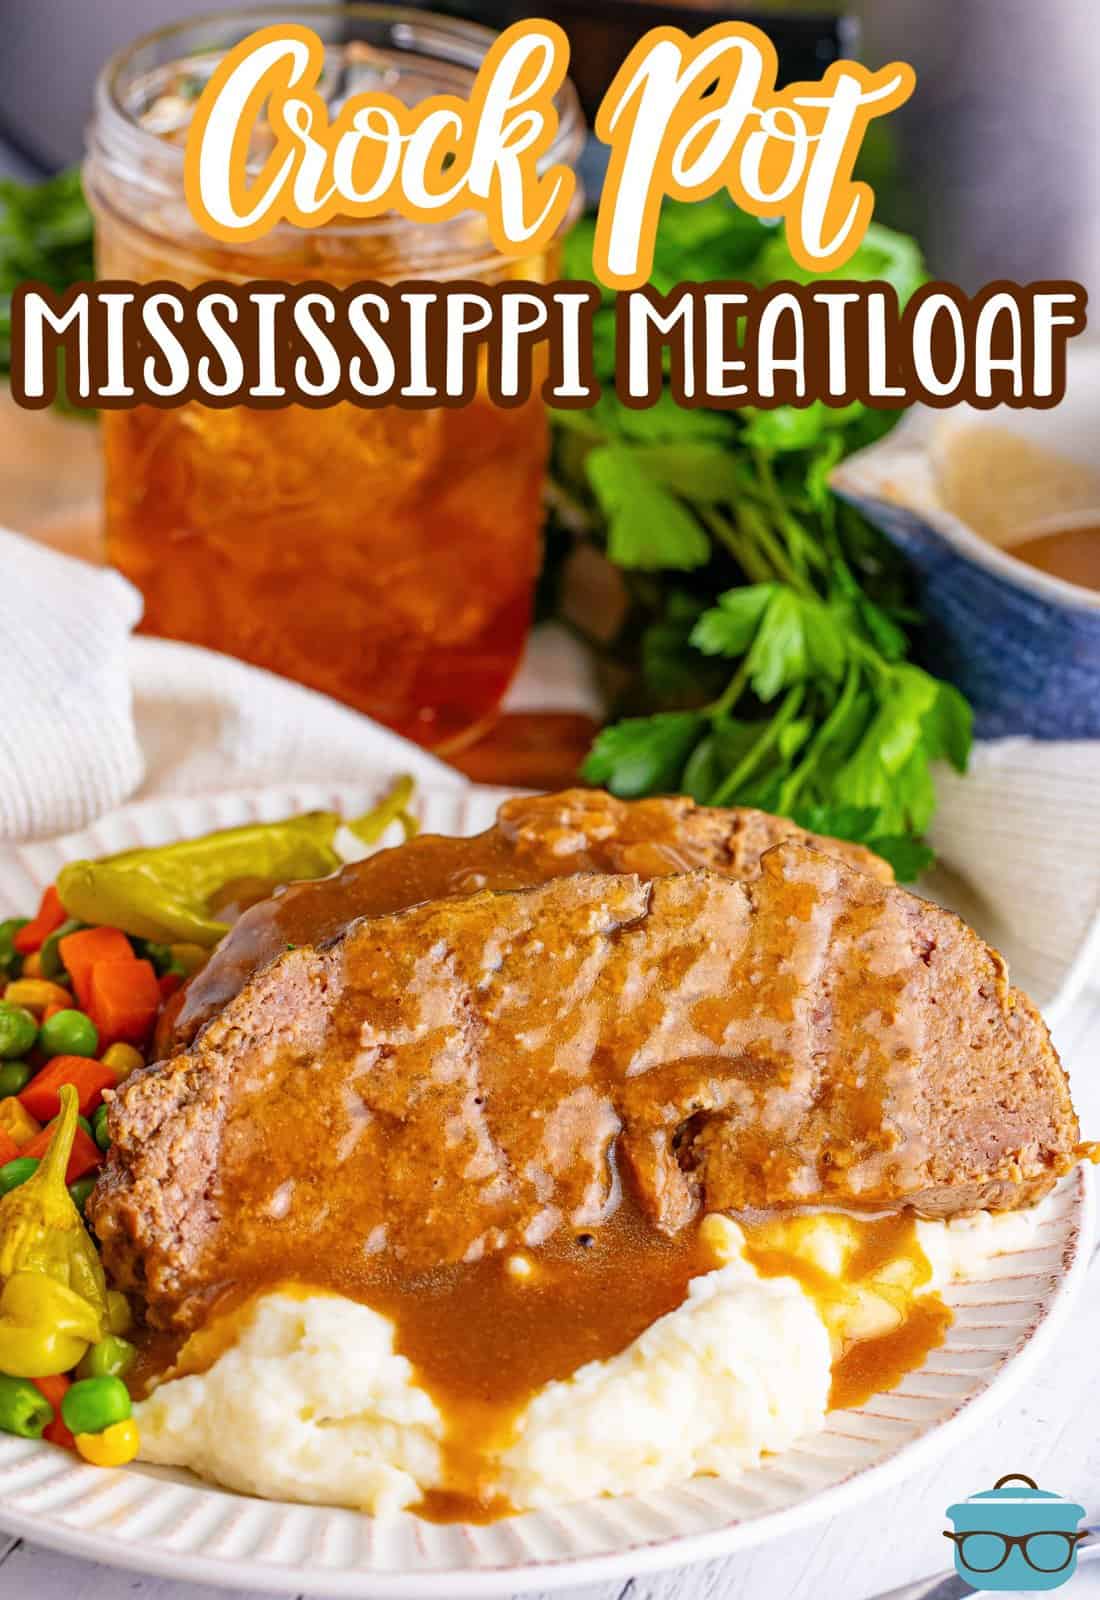 A plate of Mississippi Meatloaf wtih sides.